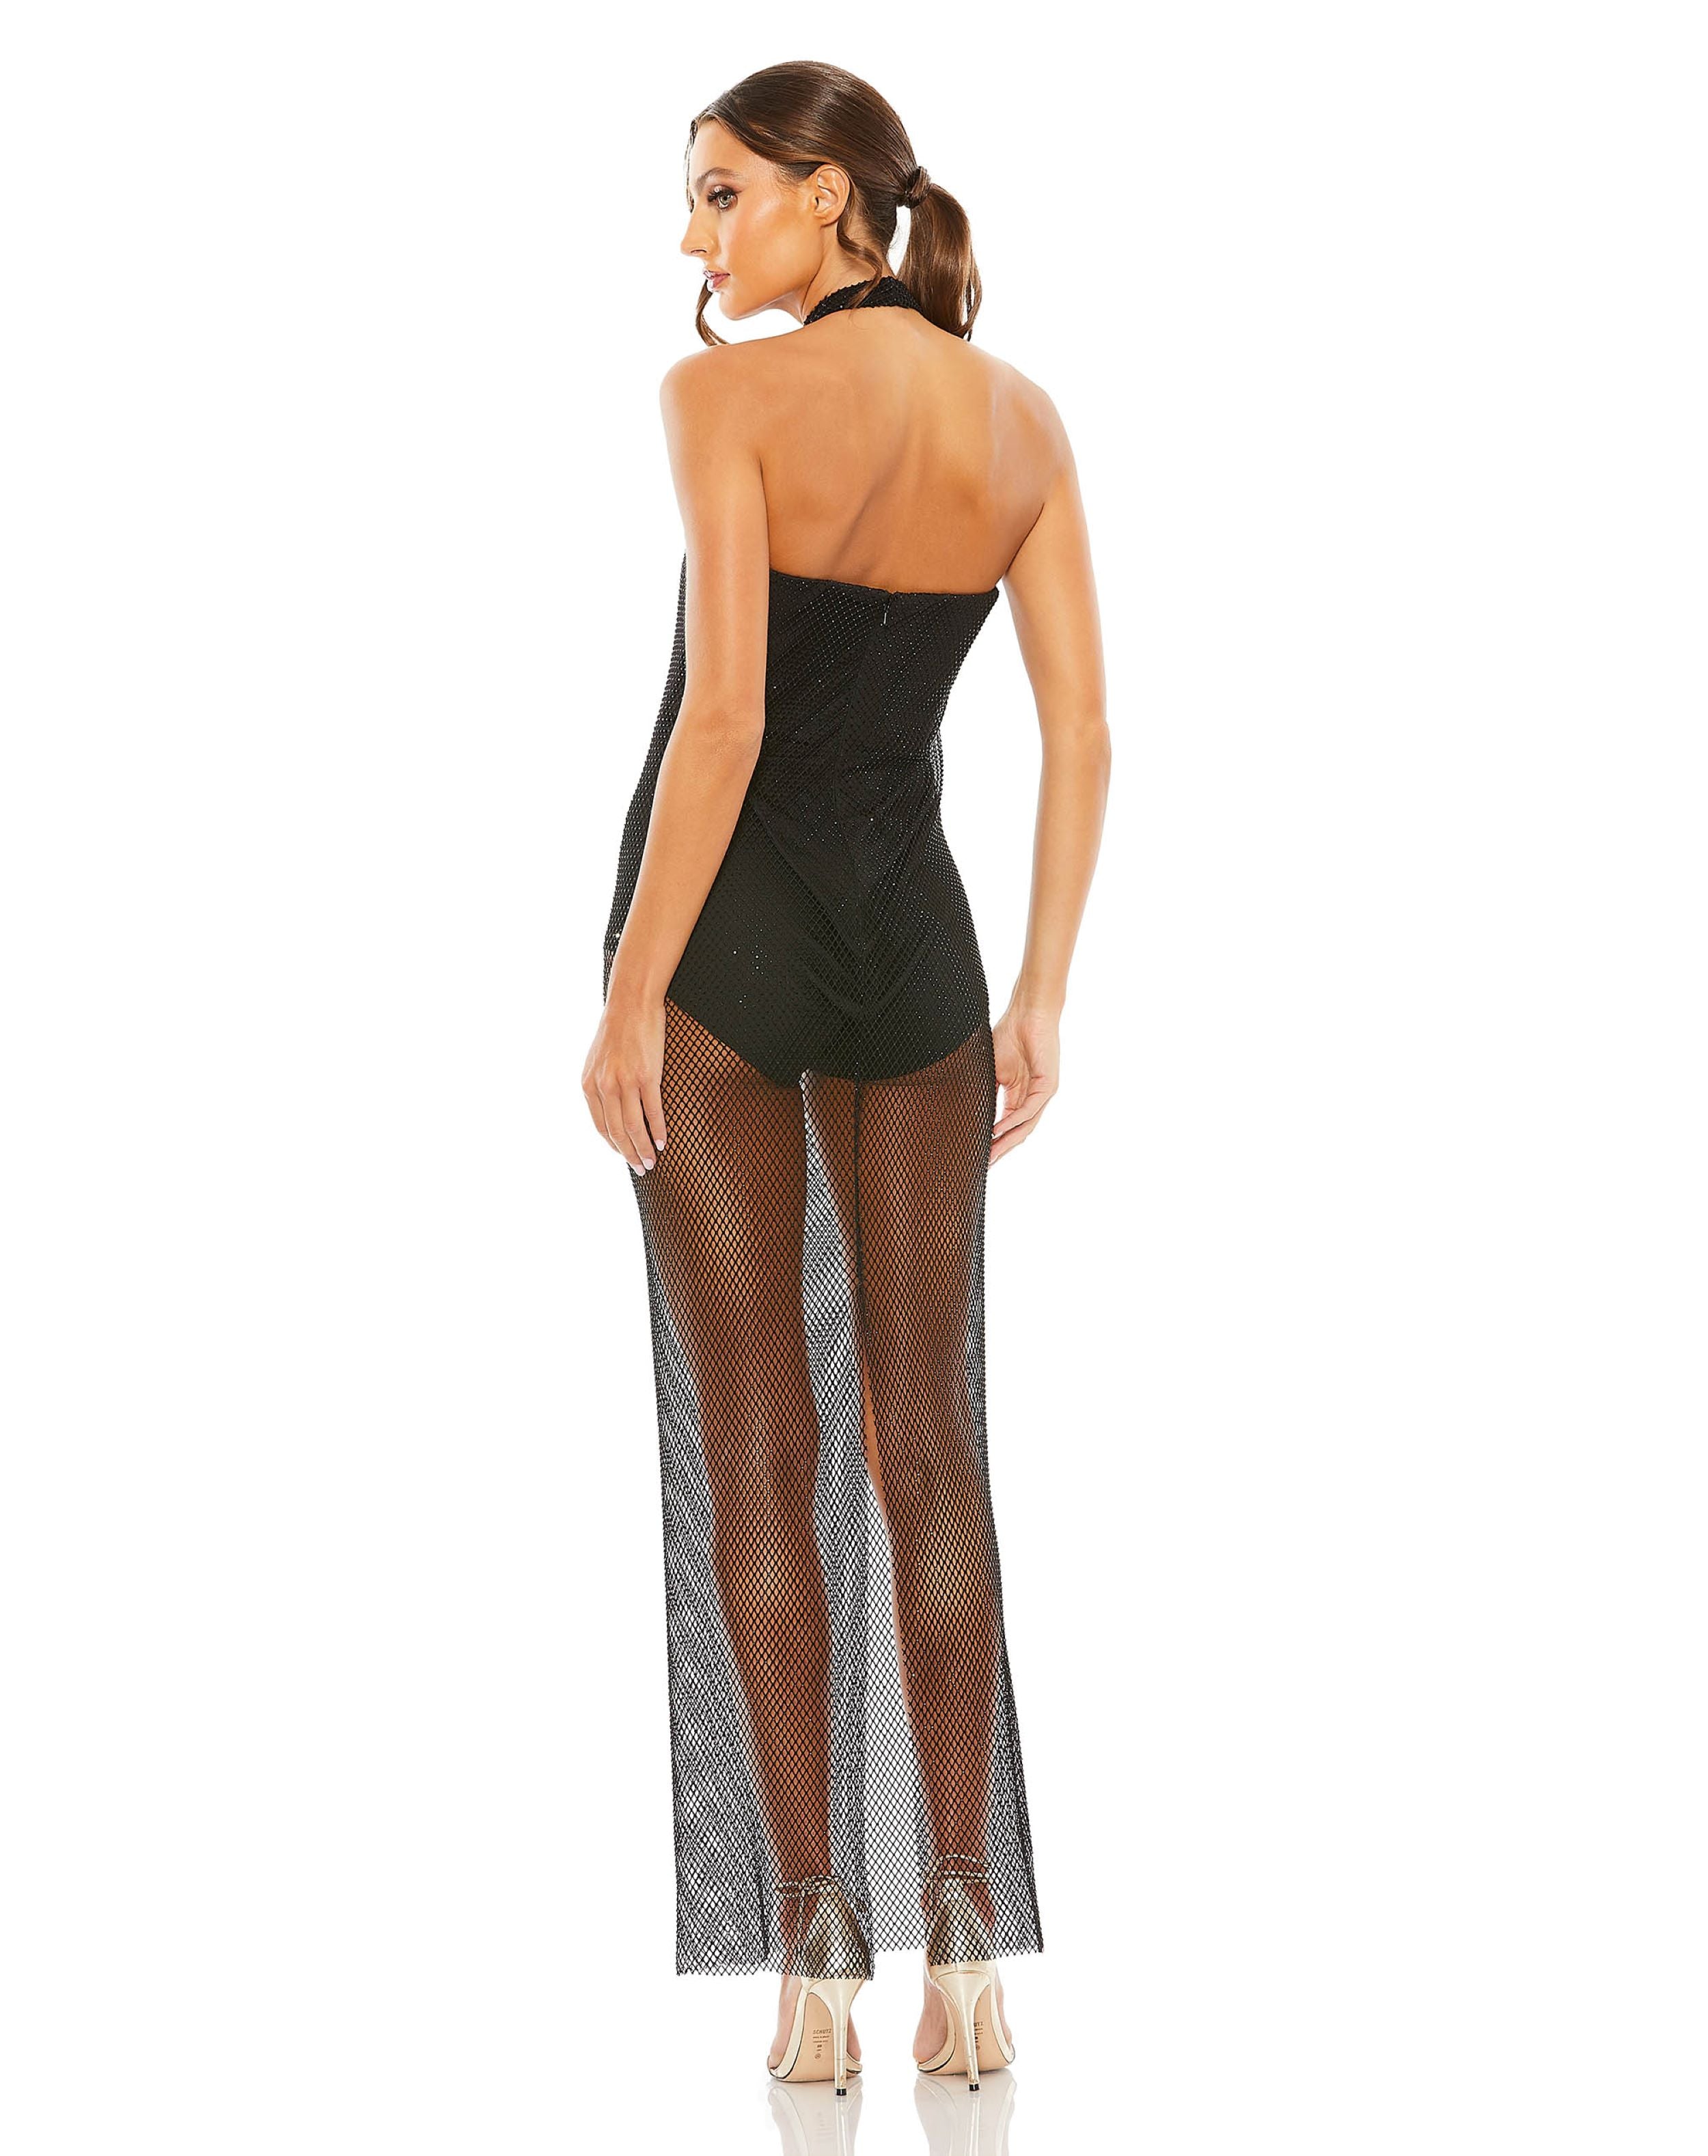 Embellished Mesh Sleeveless Dress With Bodysuit | Sample | Sz. 2